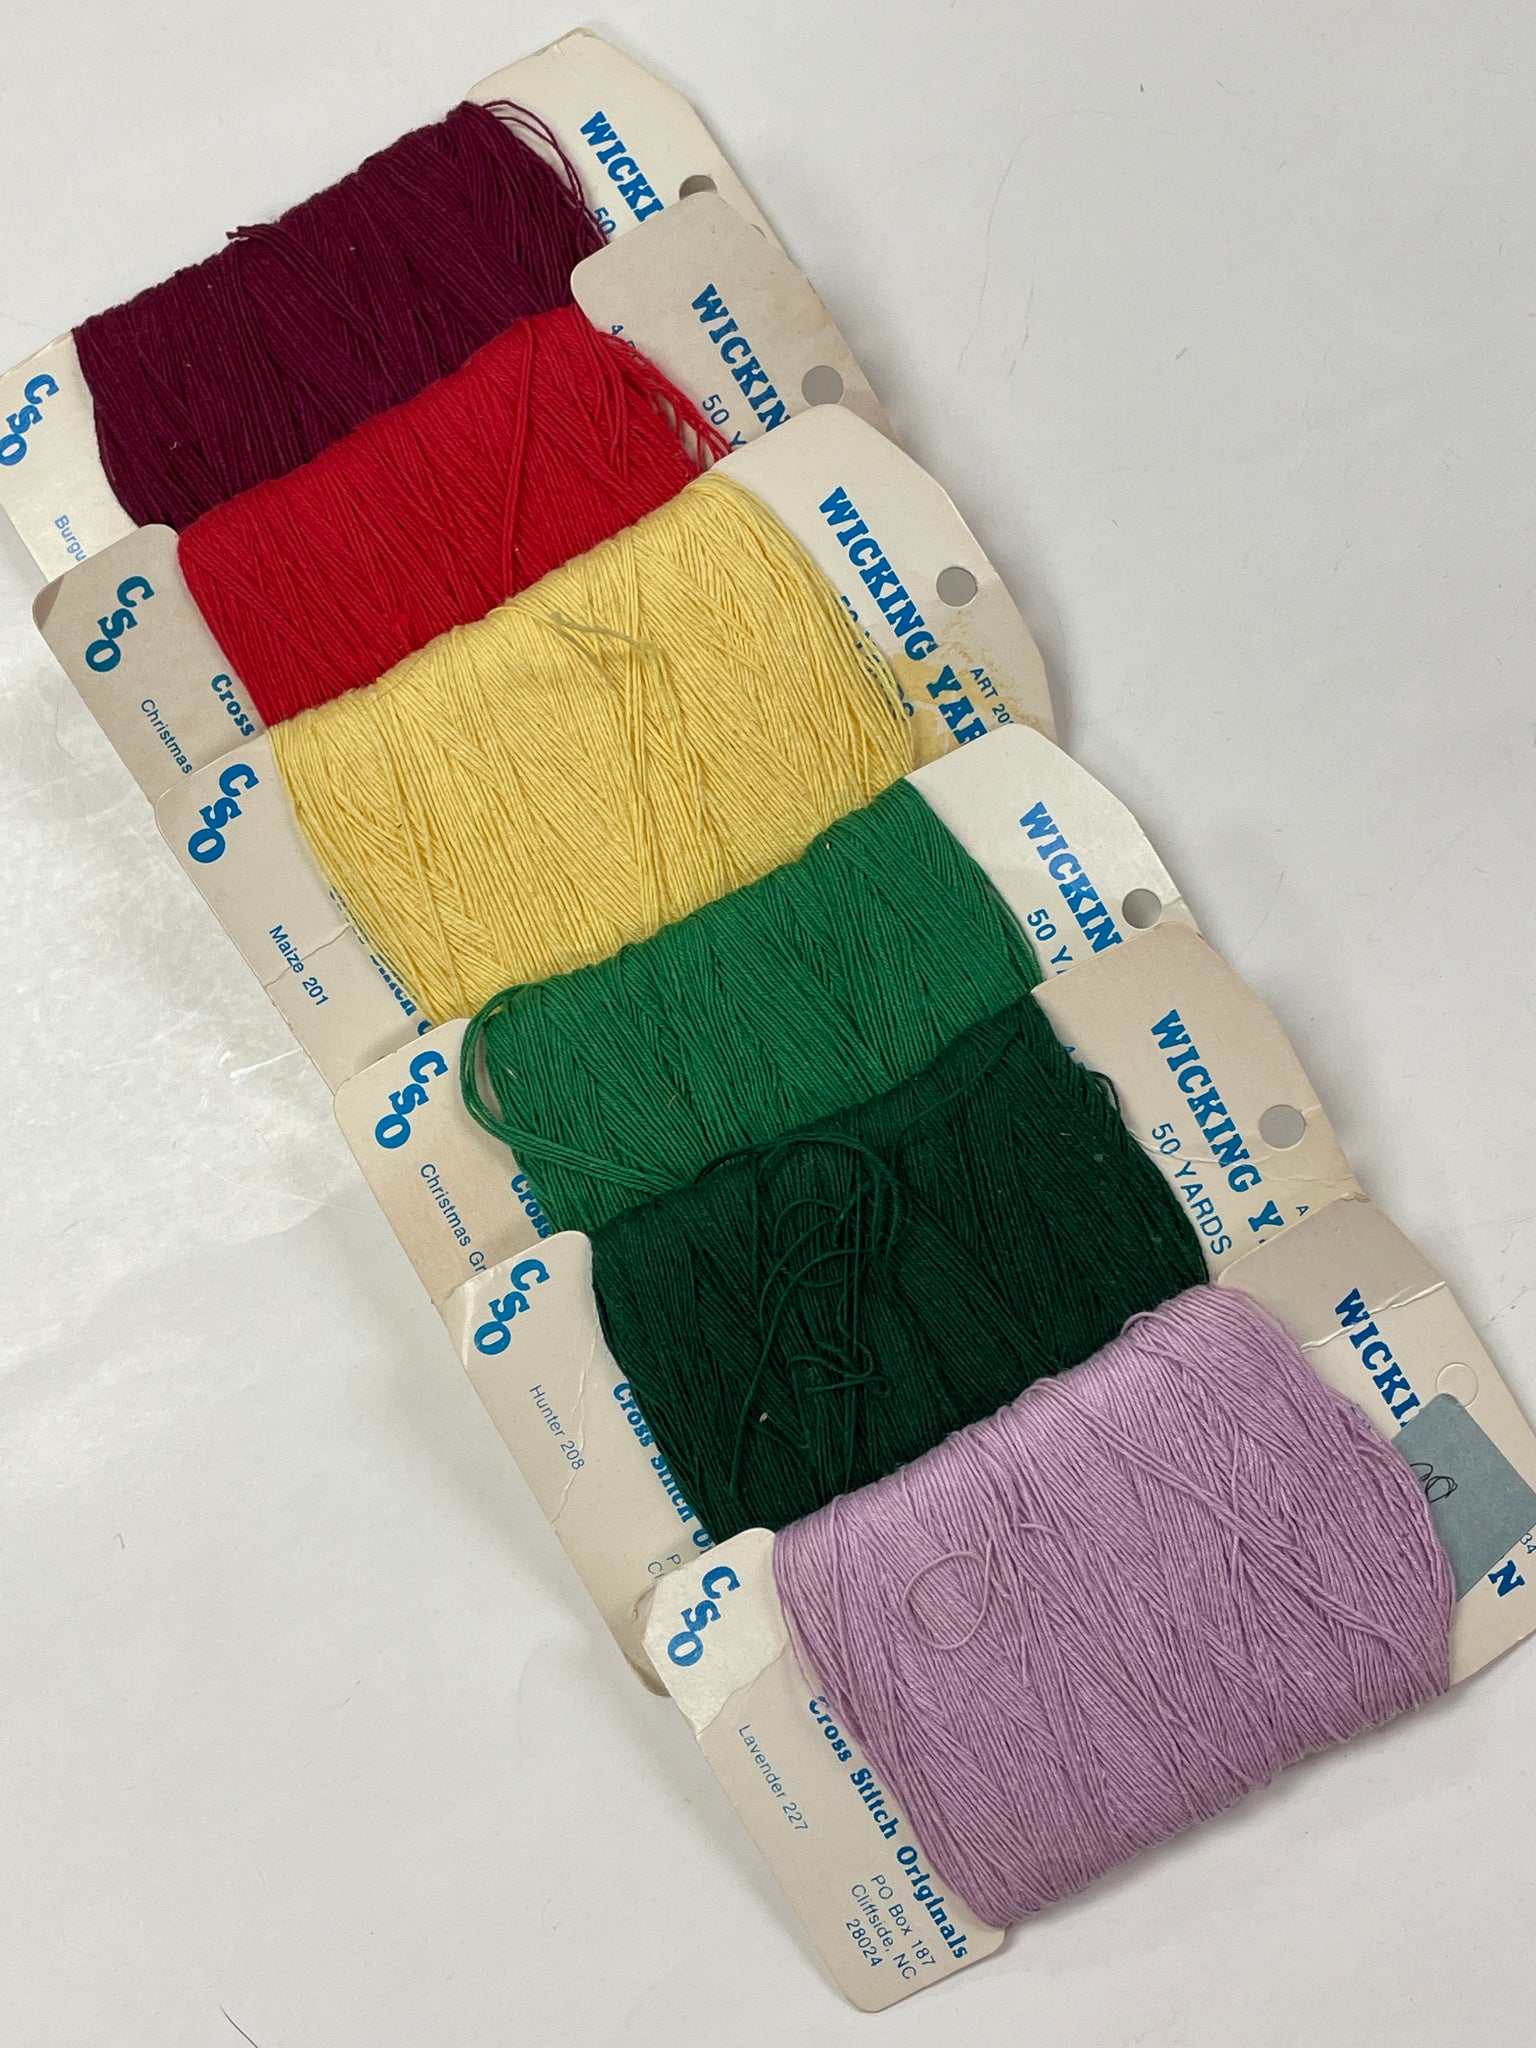 SALE Yarn Vintage Wicking Yarn - Various Colors